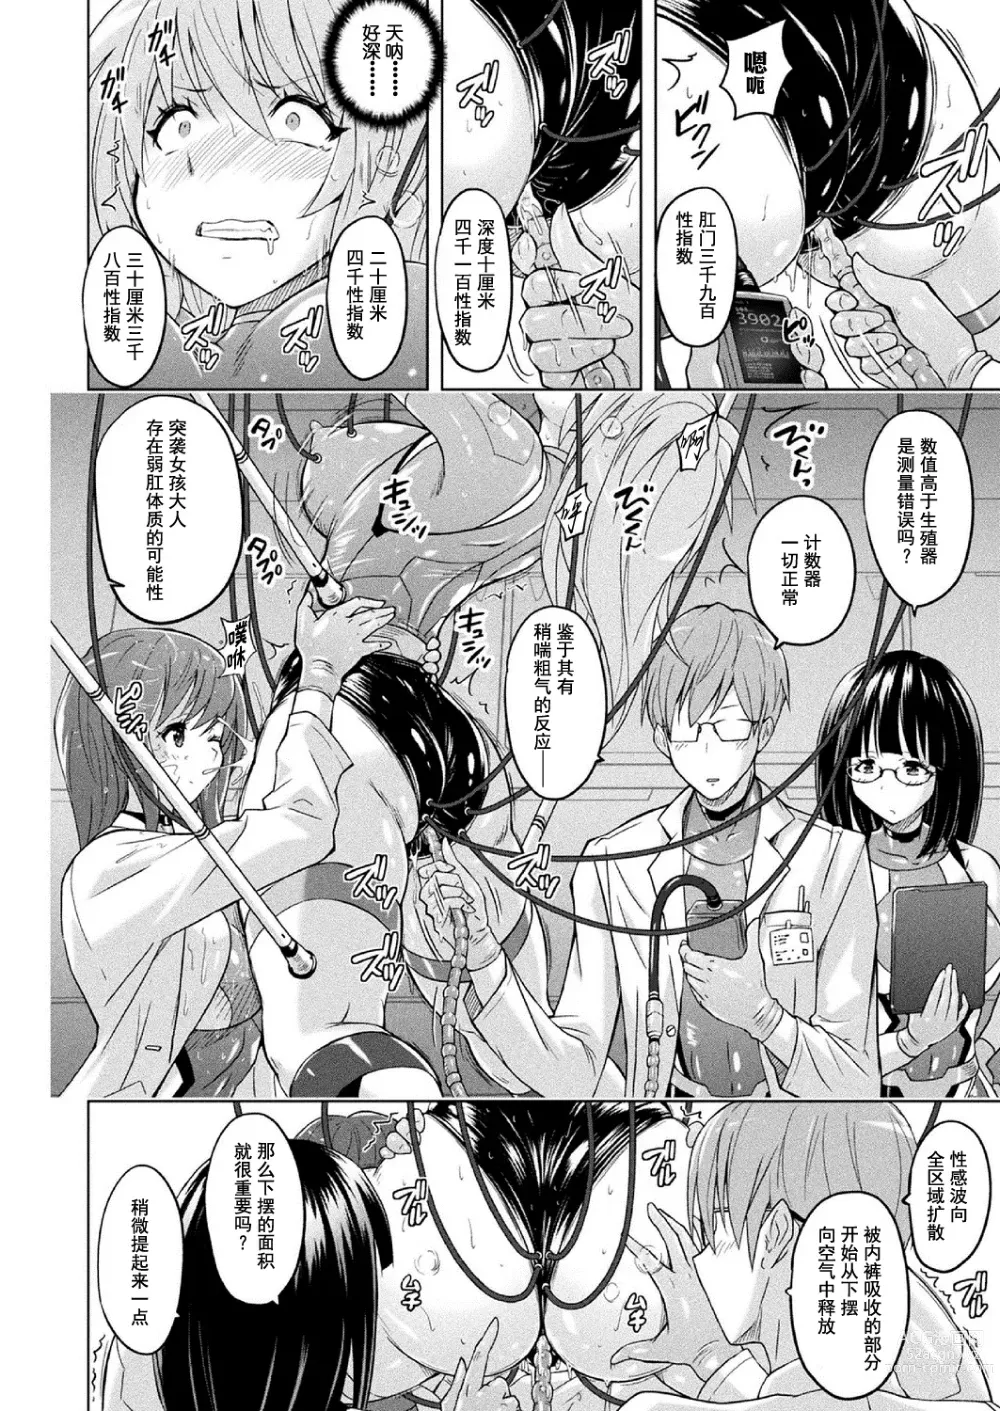 Page 9 of manga 胖次实验室 正篇+加笔【精神胡萝卜尚西·尚特耐脑控汉化】